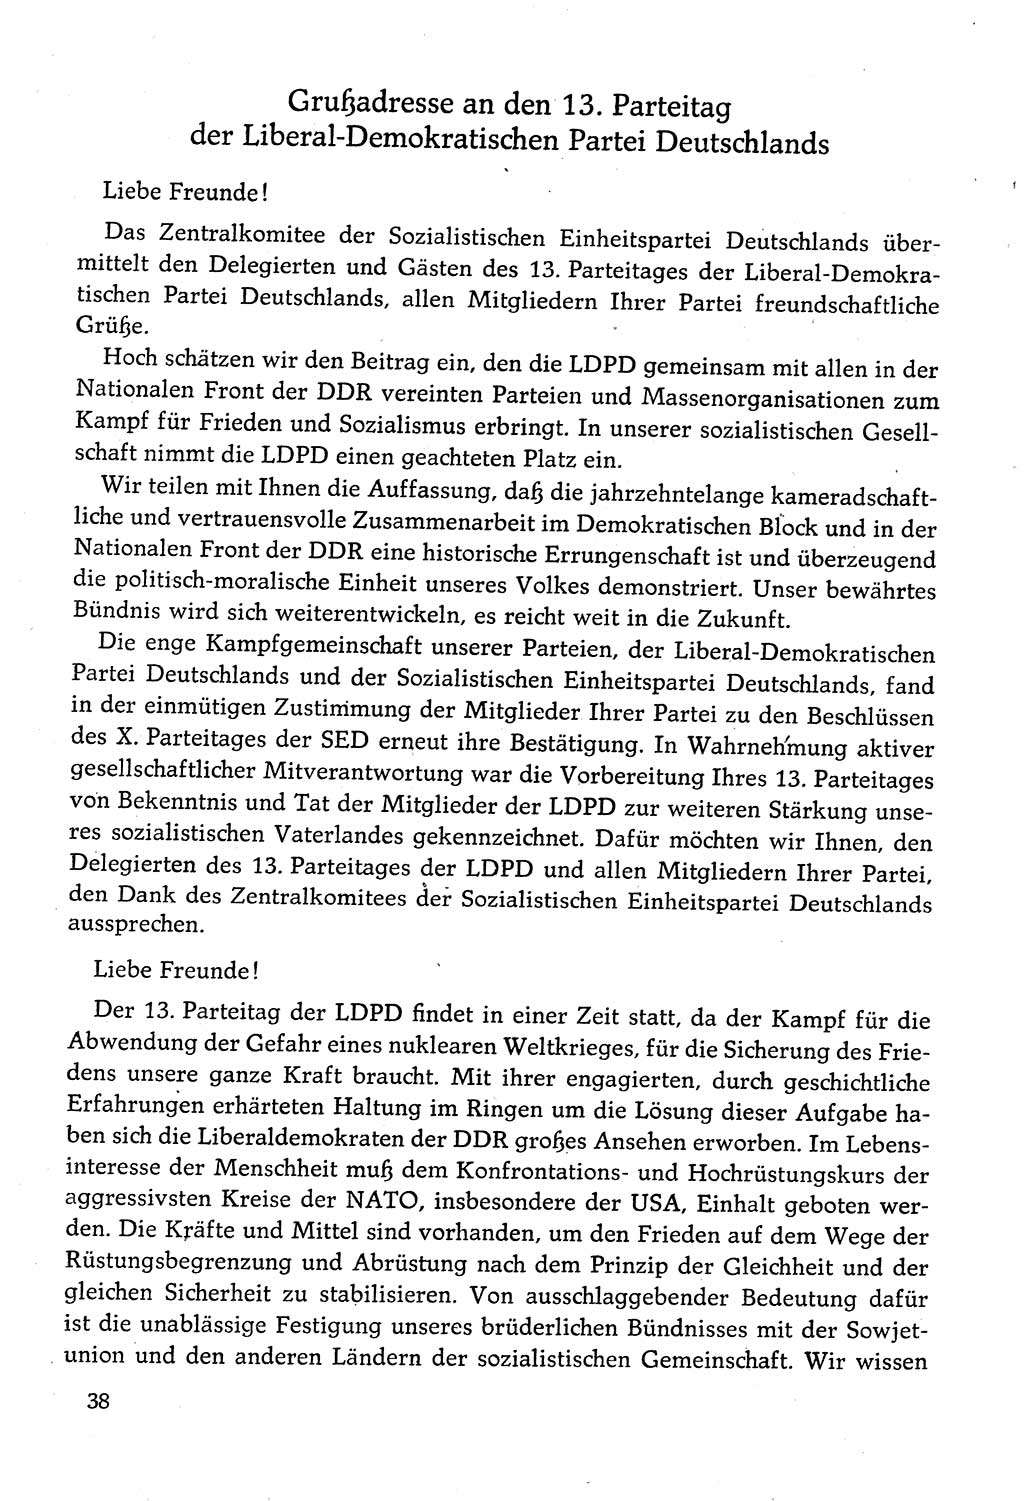 Dokumente der Sozialistischen Einheitspartei Deutschlands (SED) [Deutsche Demokratische Republik (DDR)] 1982-1983, Seite 38 (Dok. SED DDR 1982-1983, S. 38)